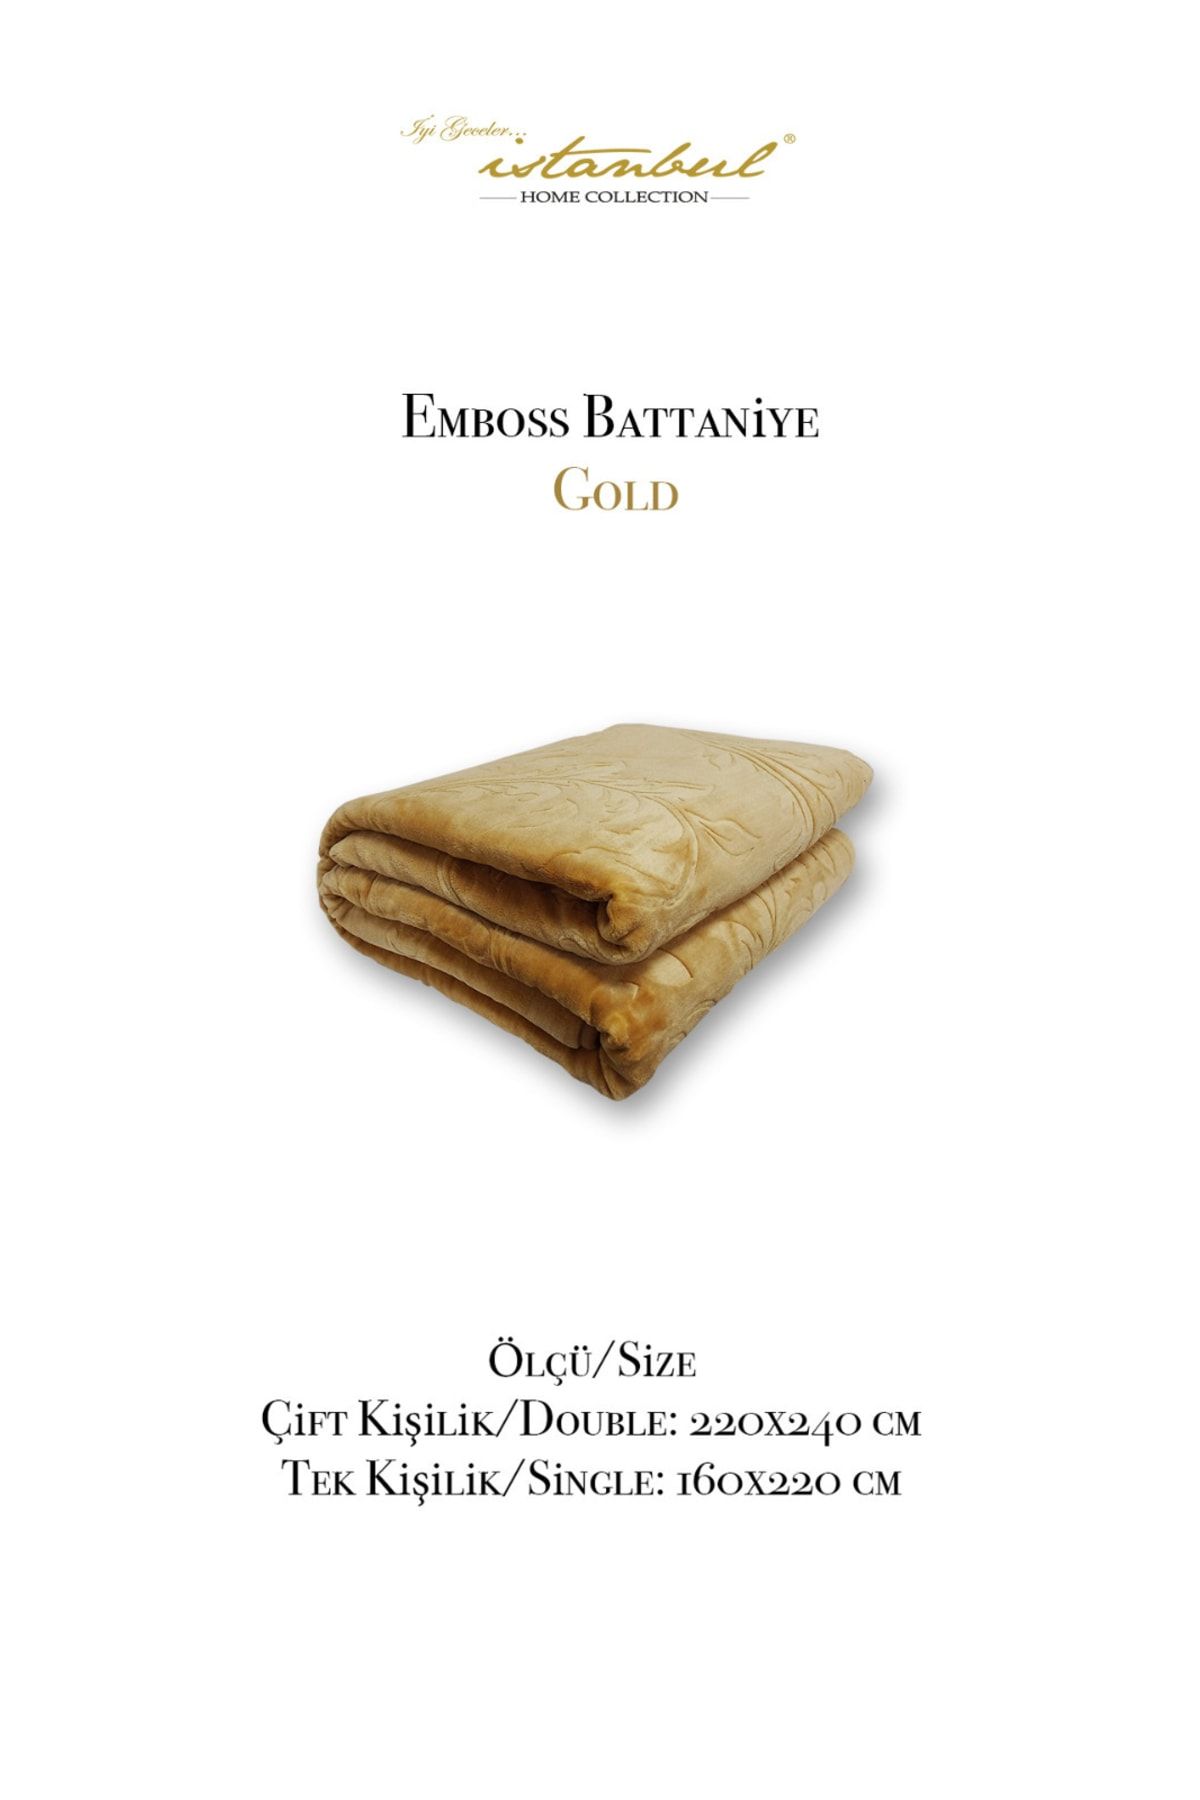 İyi Geceler İstanbul Emboss Kabartmalı Damask Cift Kisilik Battaniye Gold 220x240